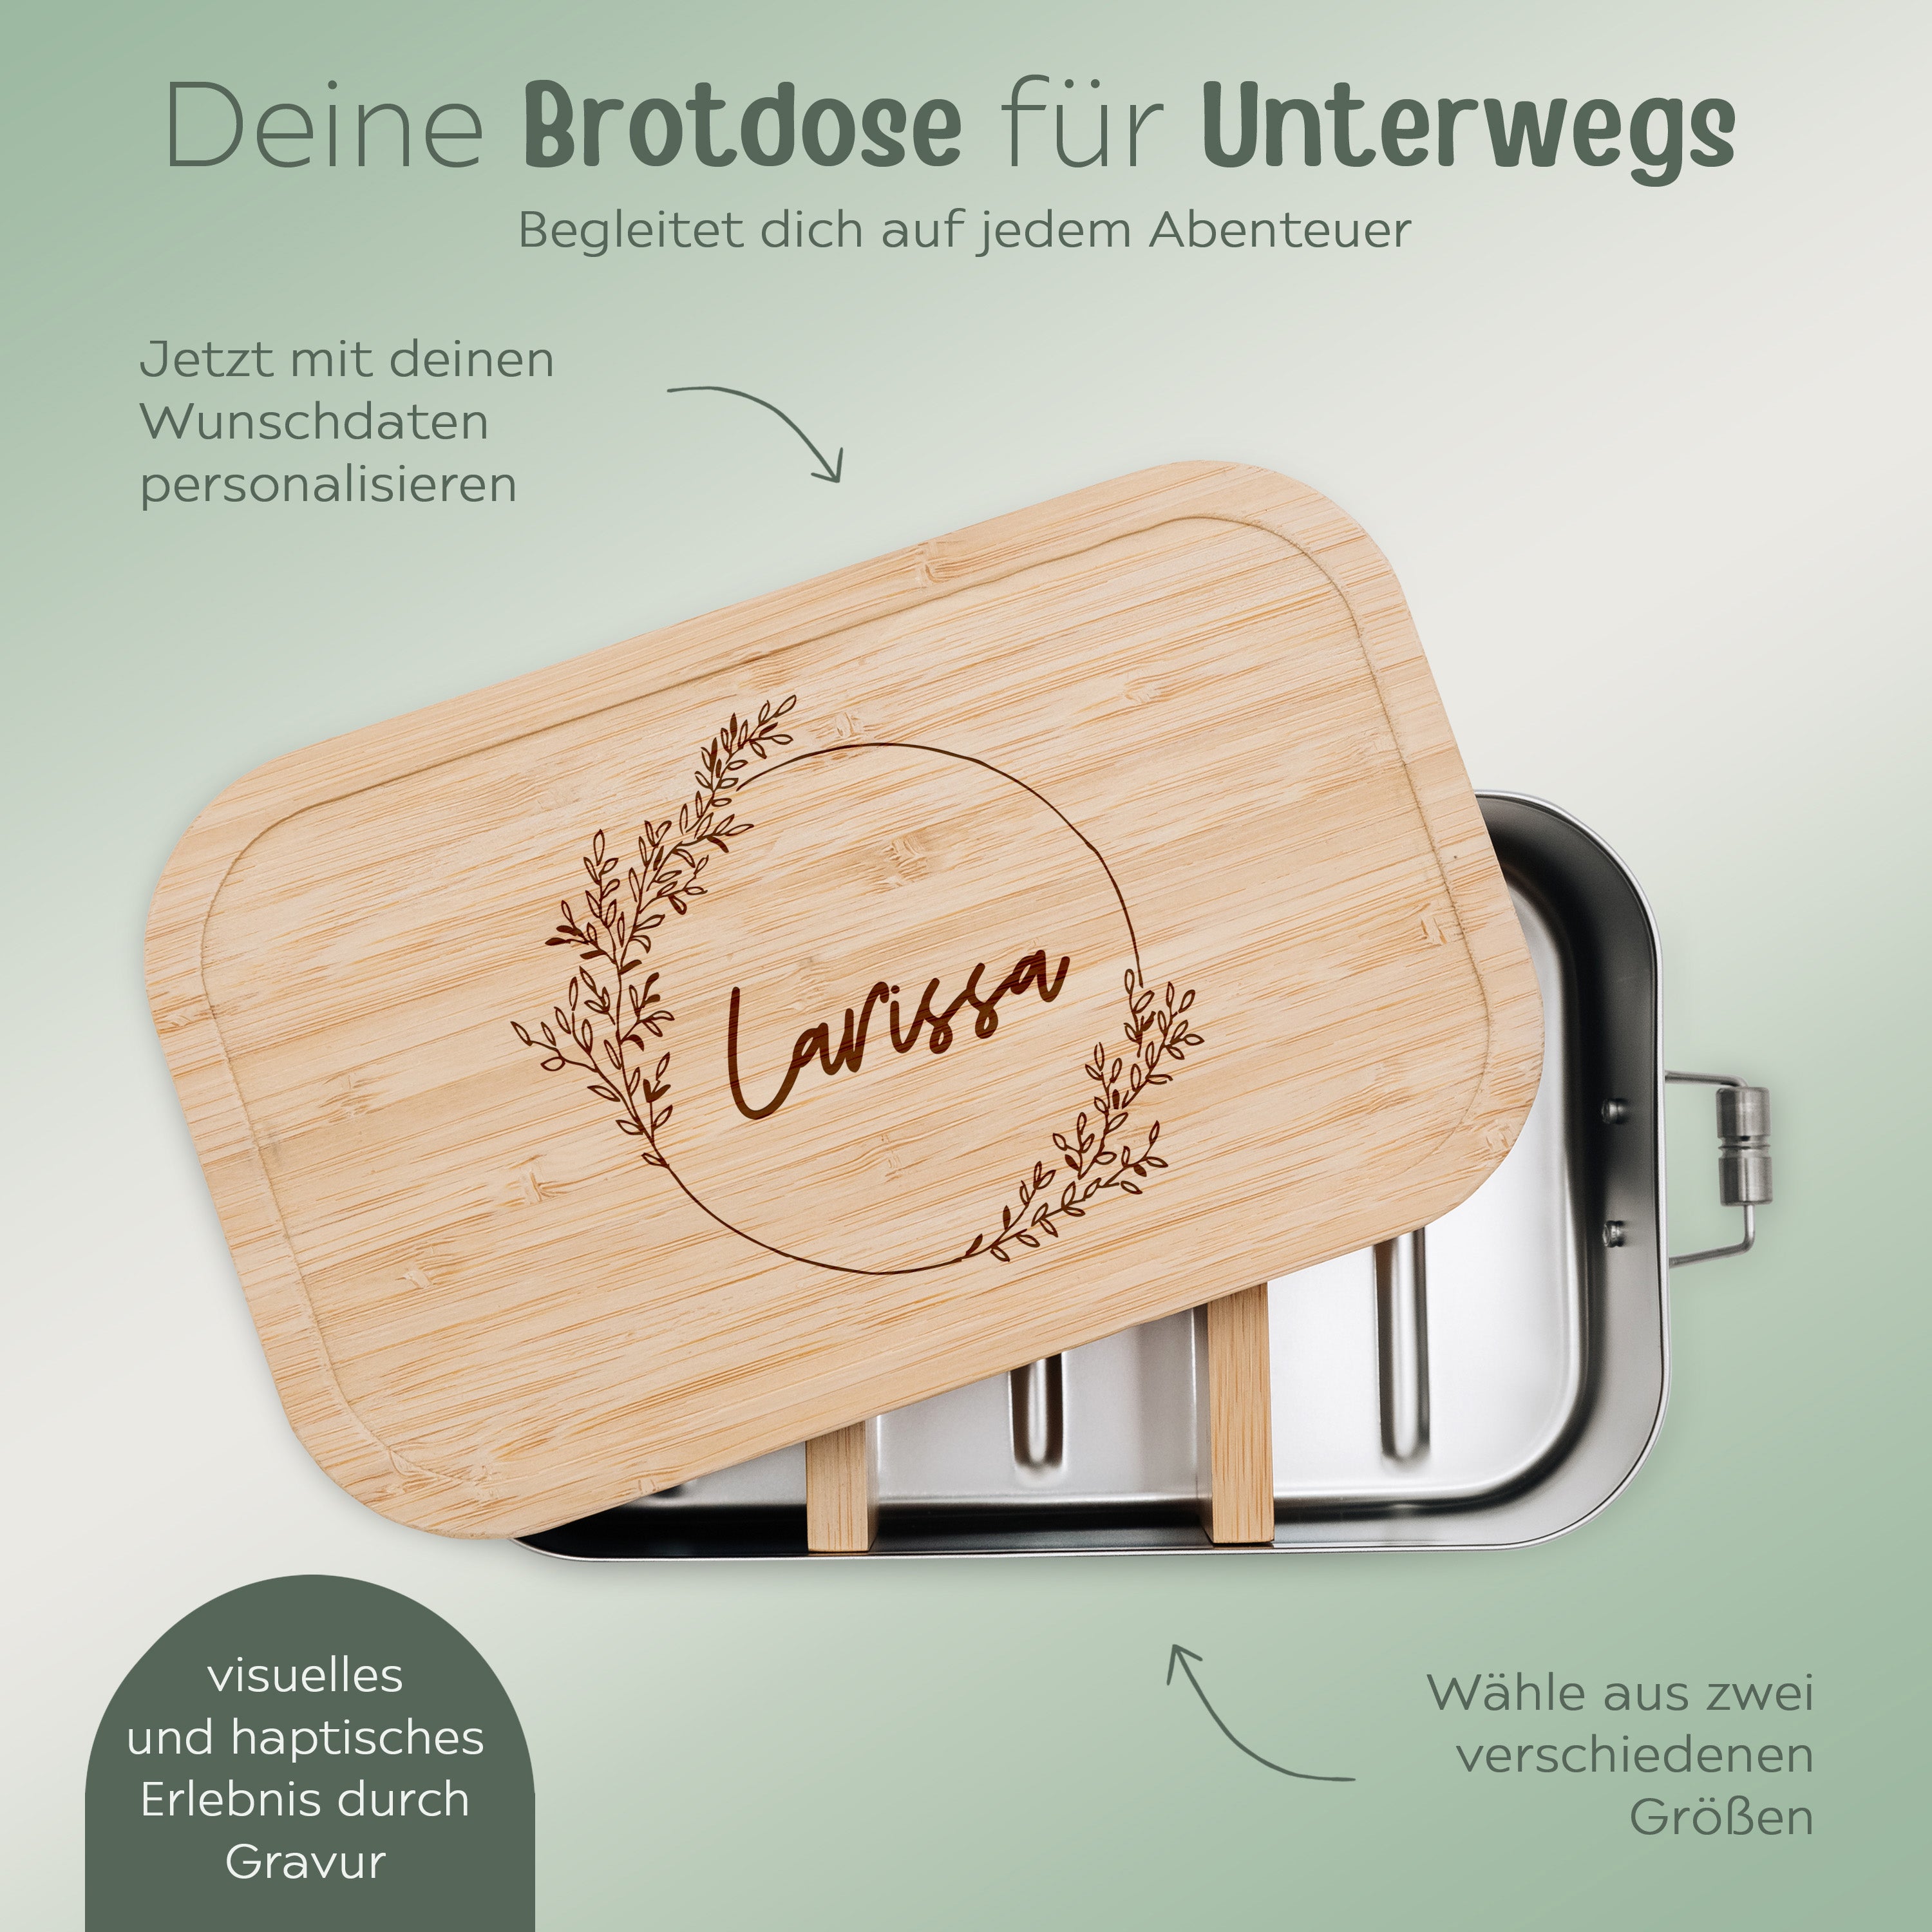 Brotdose Edelstahl personalisiert - Blumenkranz Gravur